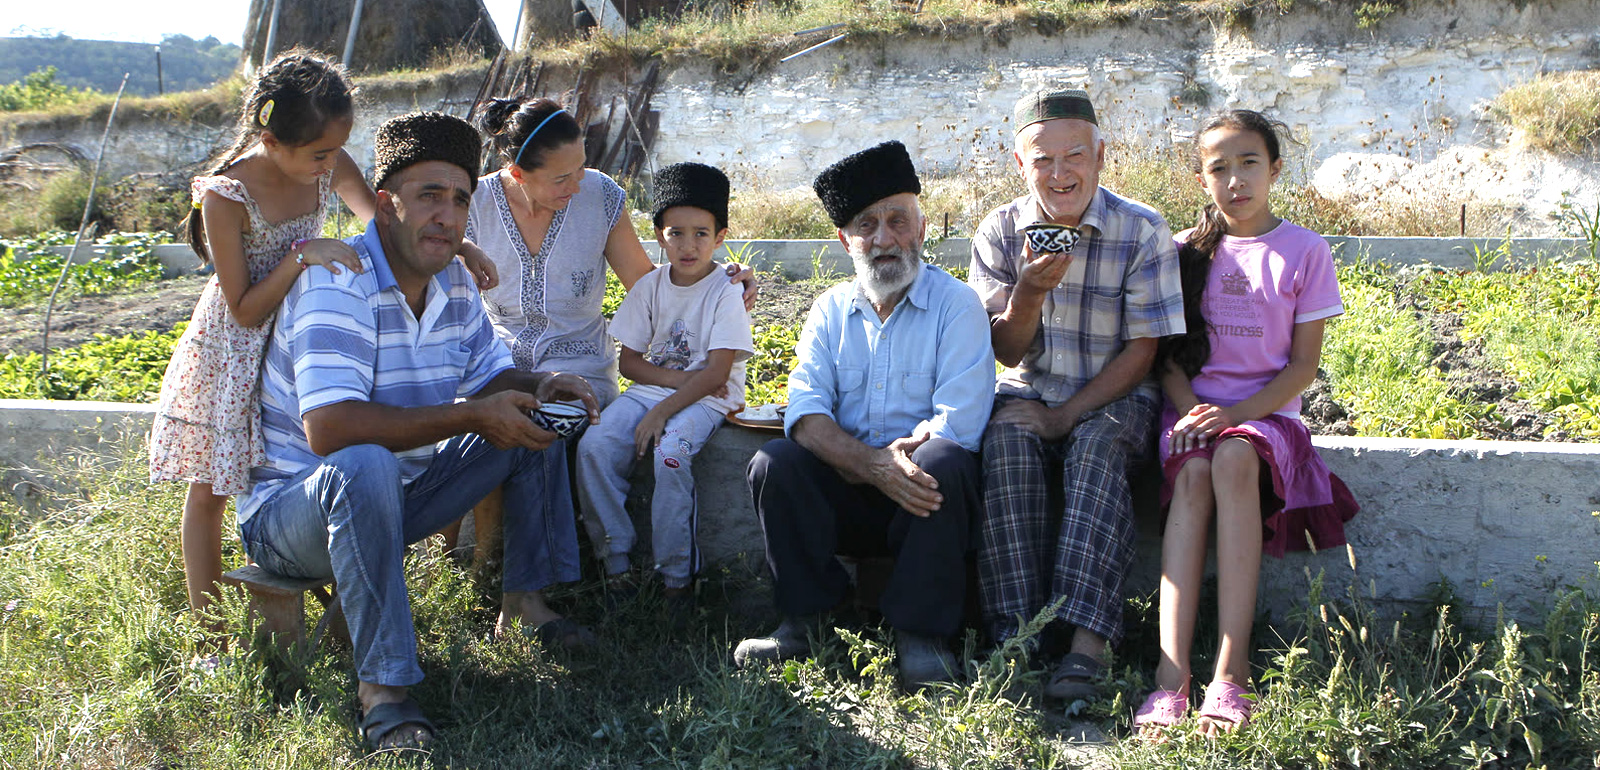 Осман (слева) на историческую родину приехал из Узбекистана в 1991 году.   Сейчас живет в селе Приятное Свидание под Симферополем со своей большой семьей: женой, тремя детьми; отцом и дядей — жертвами депортации 1944 года.